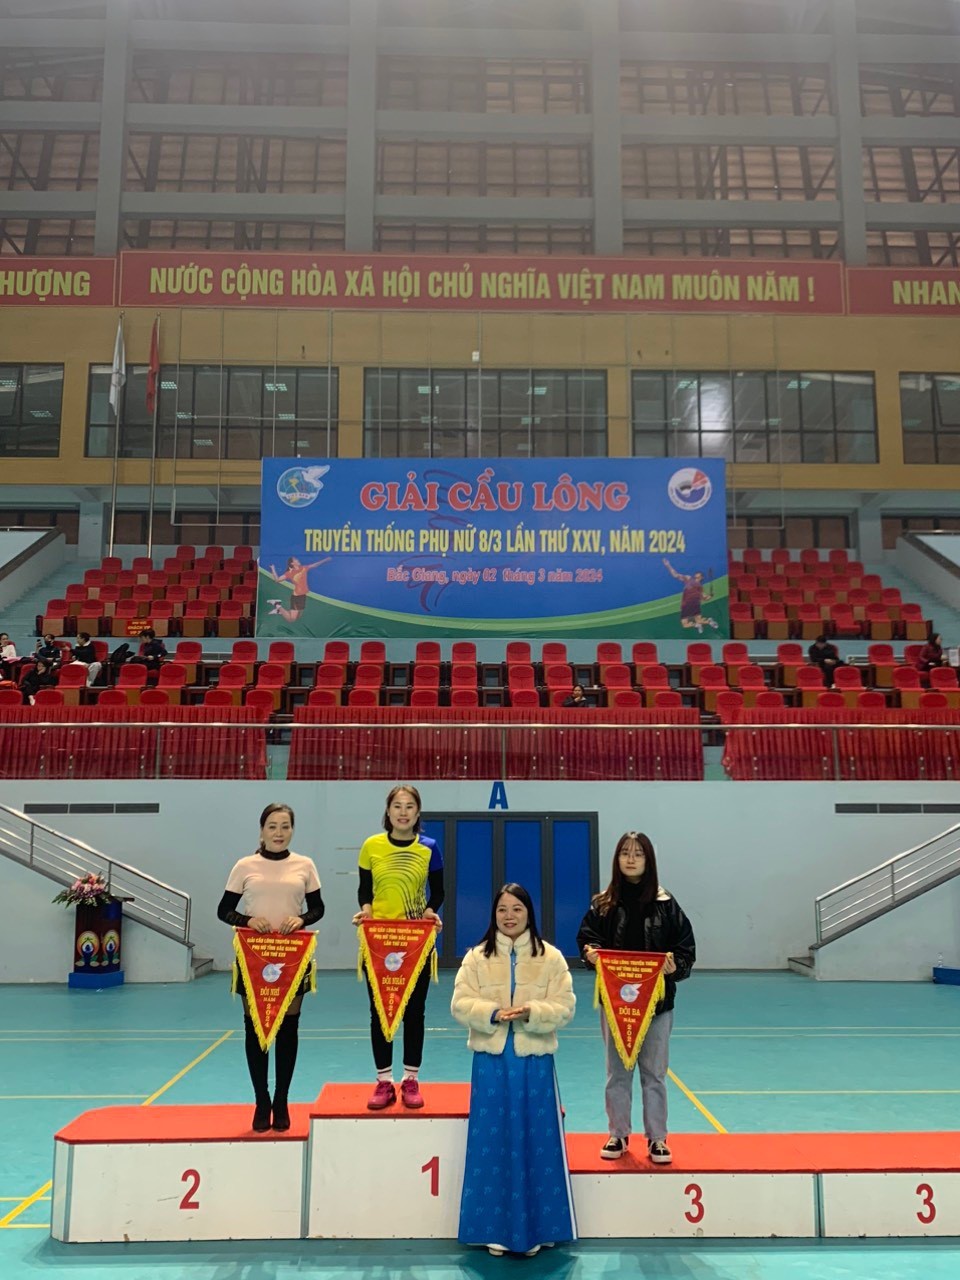 Công đoàn Cục THADS tỉnh Bắc Giang giành giải Nhì và hai giải Ba Giải cầu lông truyền thống phụ nữ tỉnh Bắc Giang năm 2024